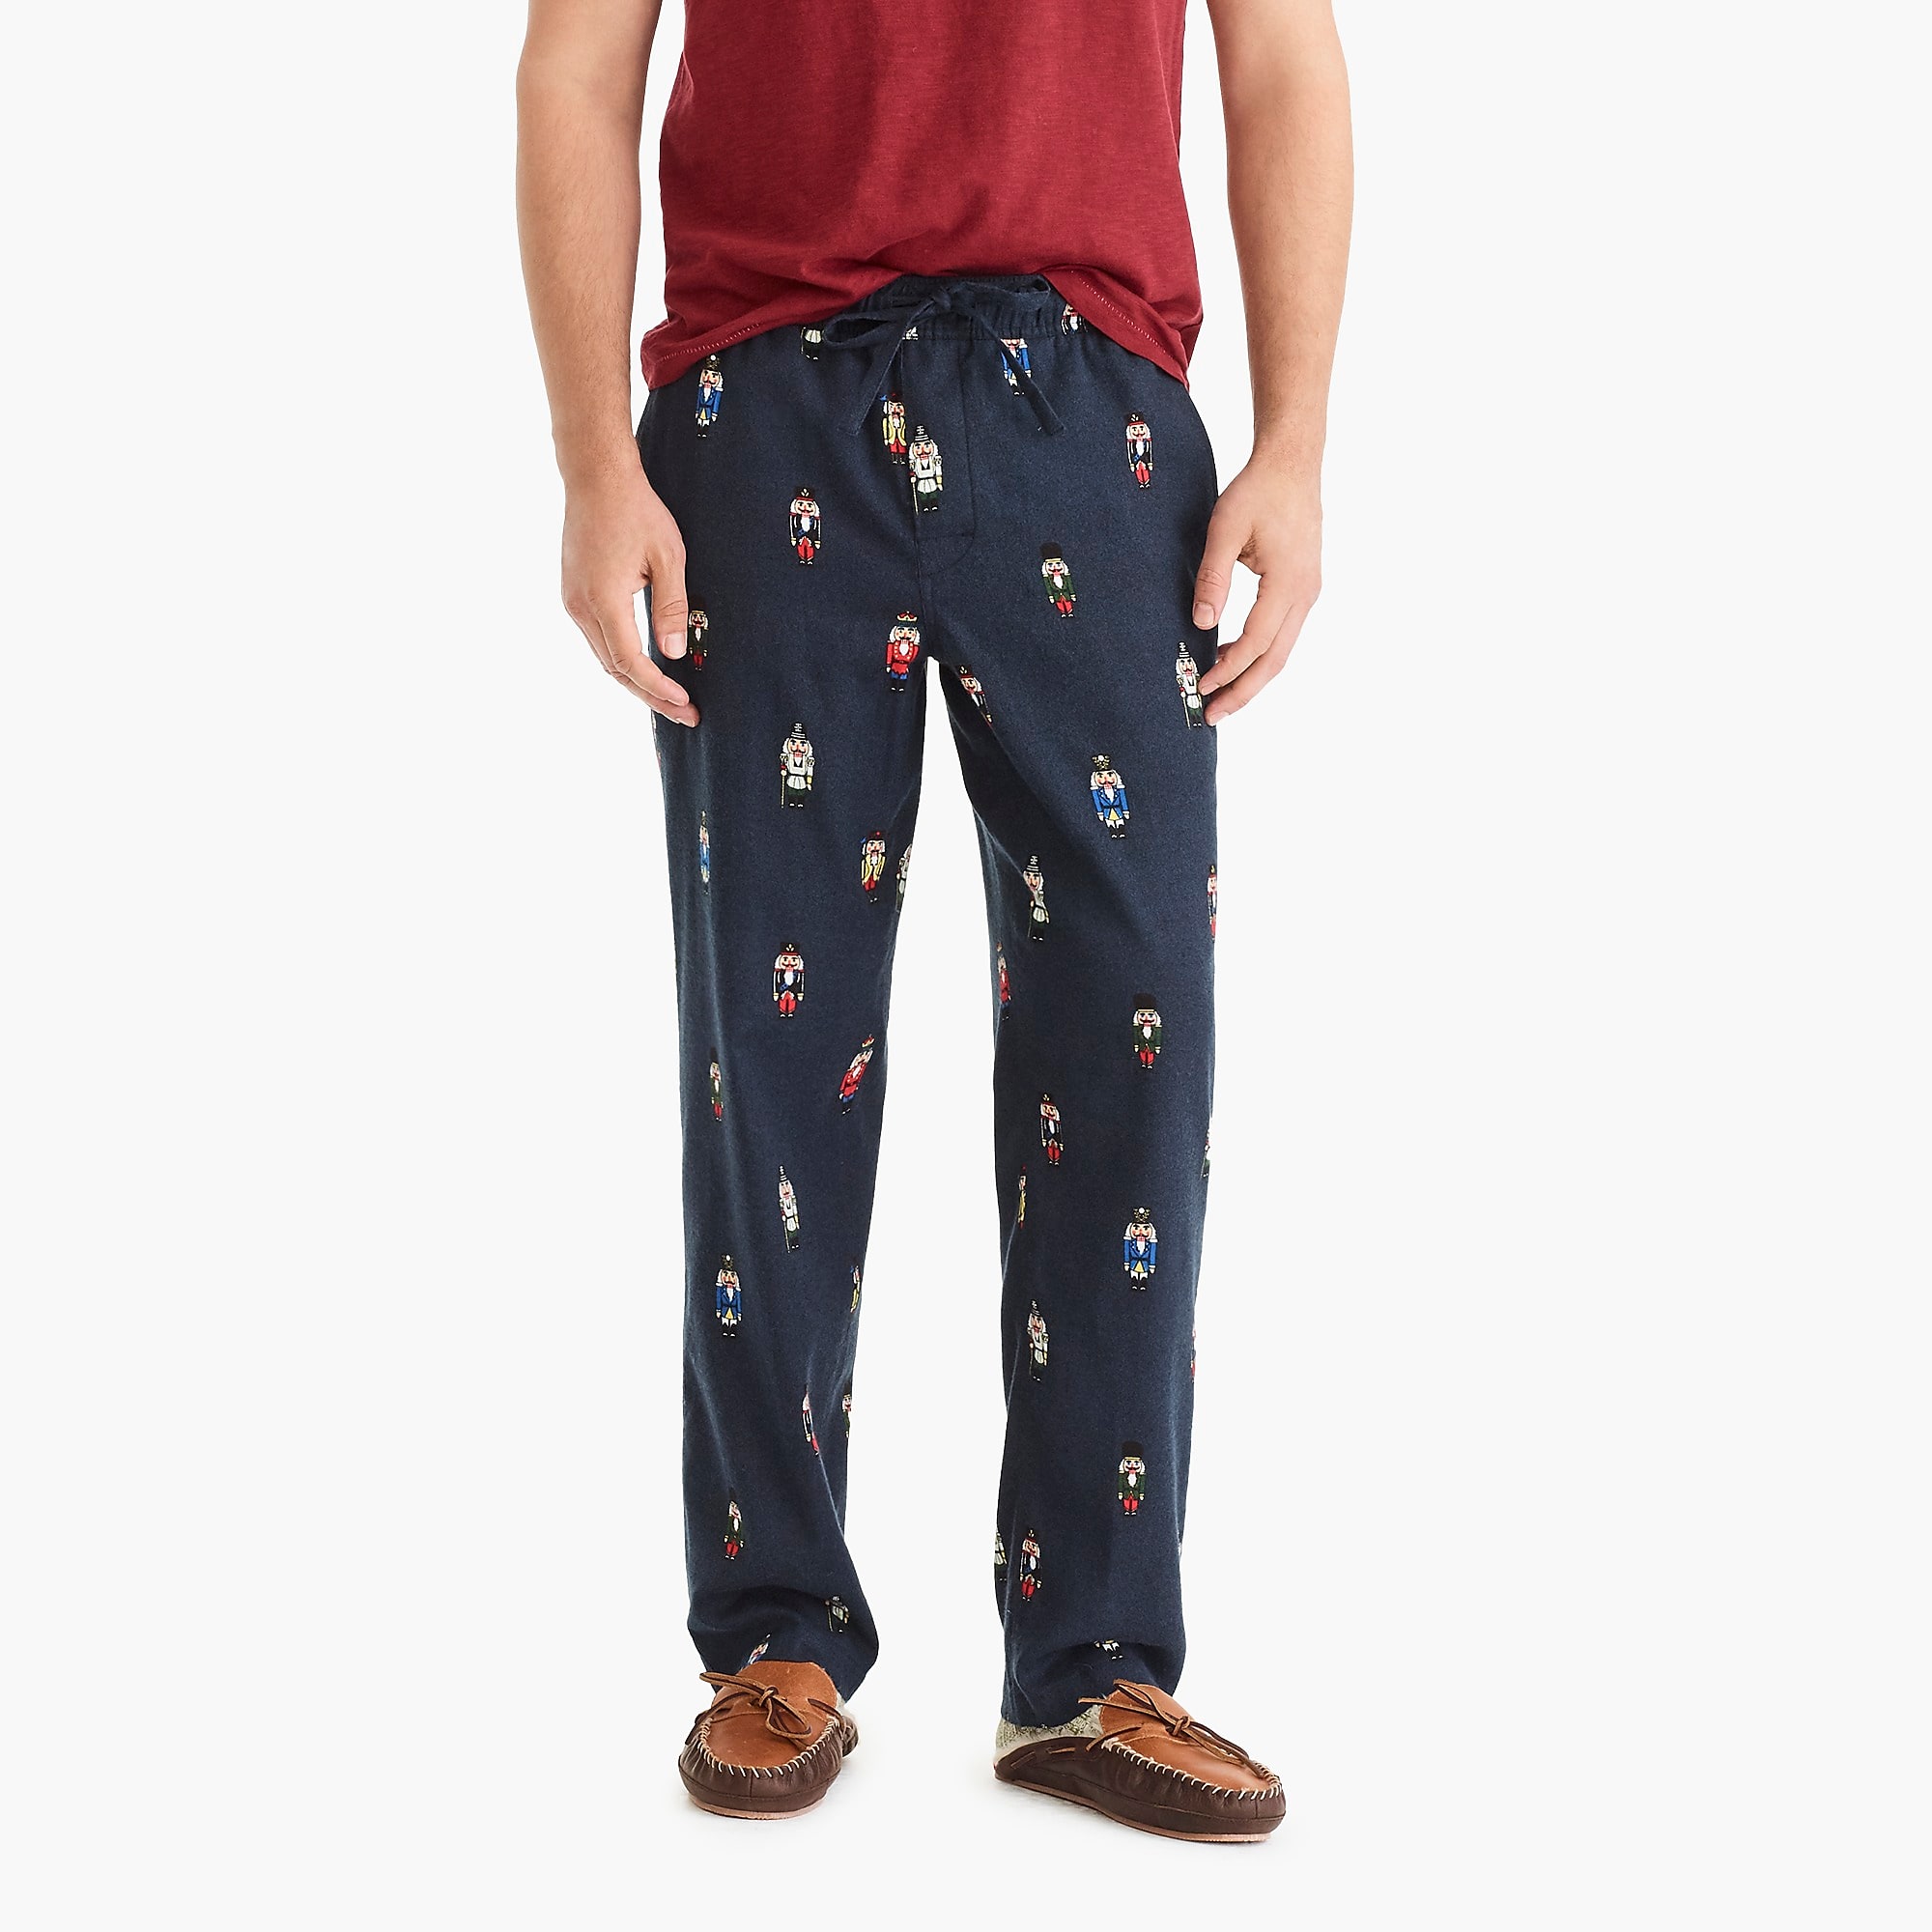 Nutcracker Pajama Pant